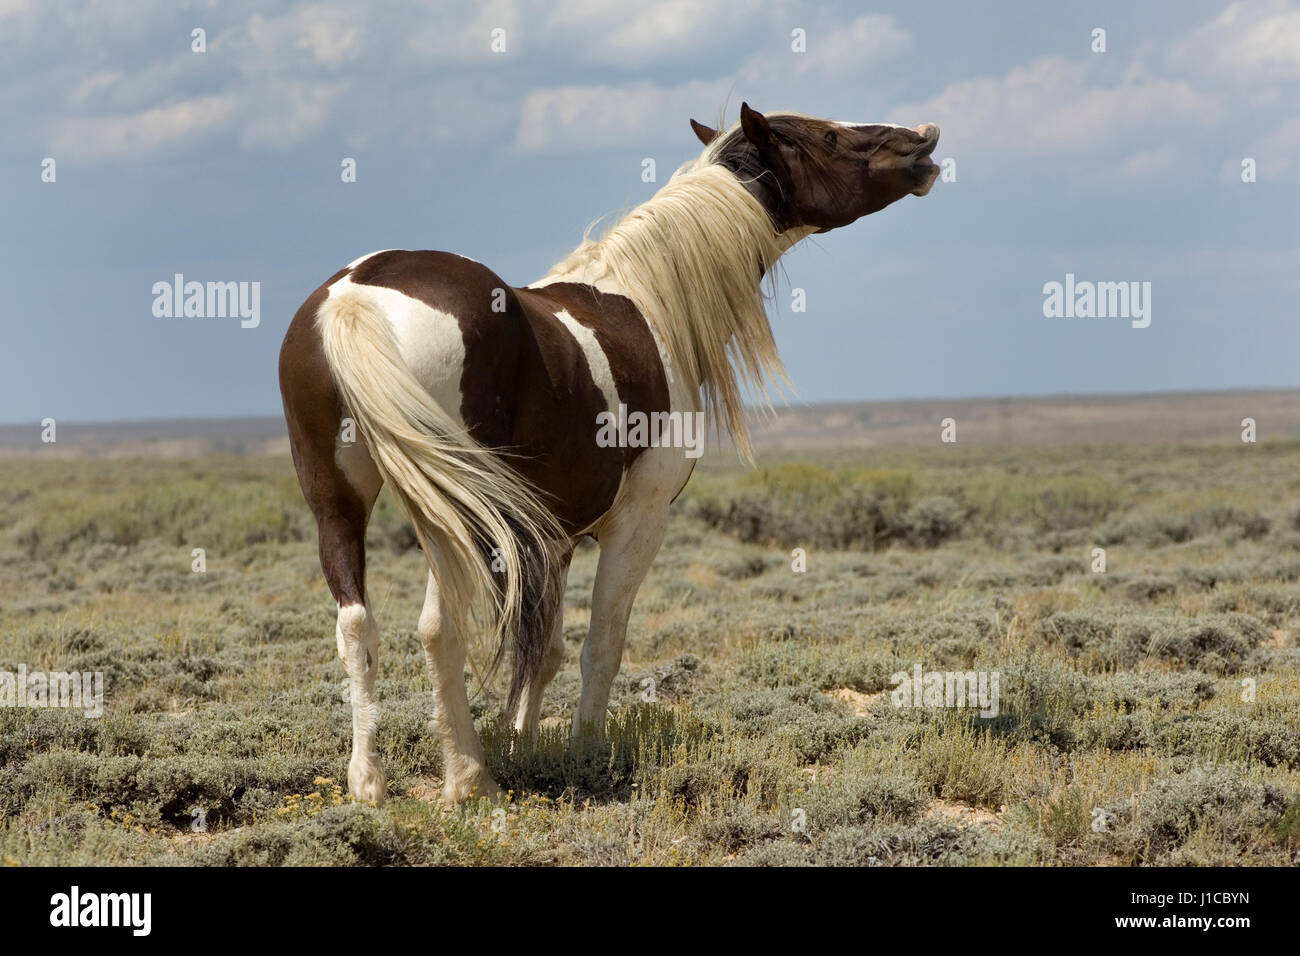 Mustang (Equus ferus caballus), étalon, piebald flehming dans la prairie, Wyoming, USA Banque D'Images